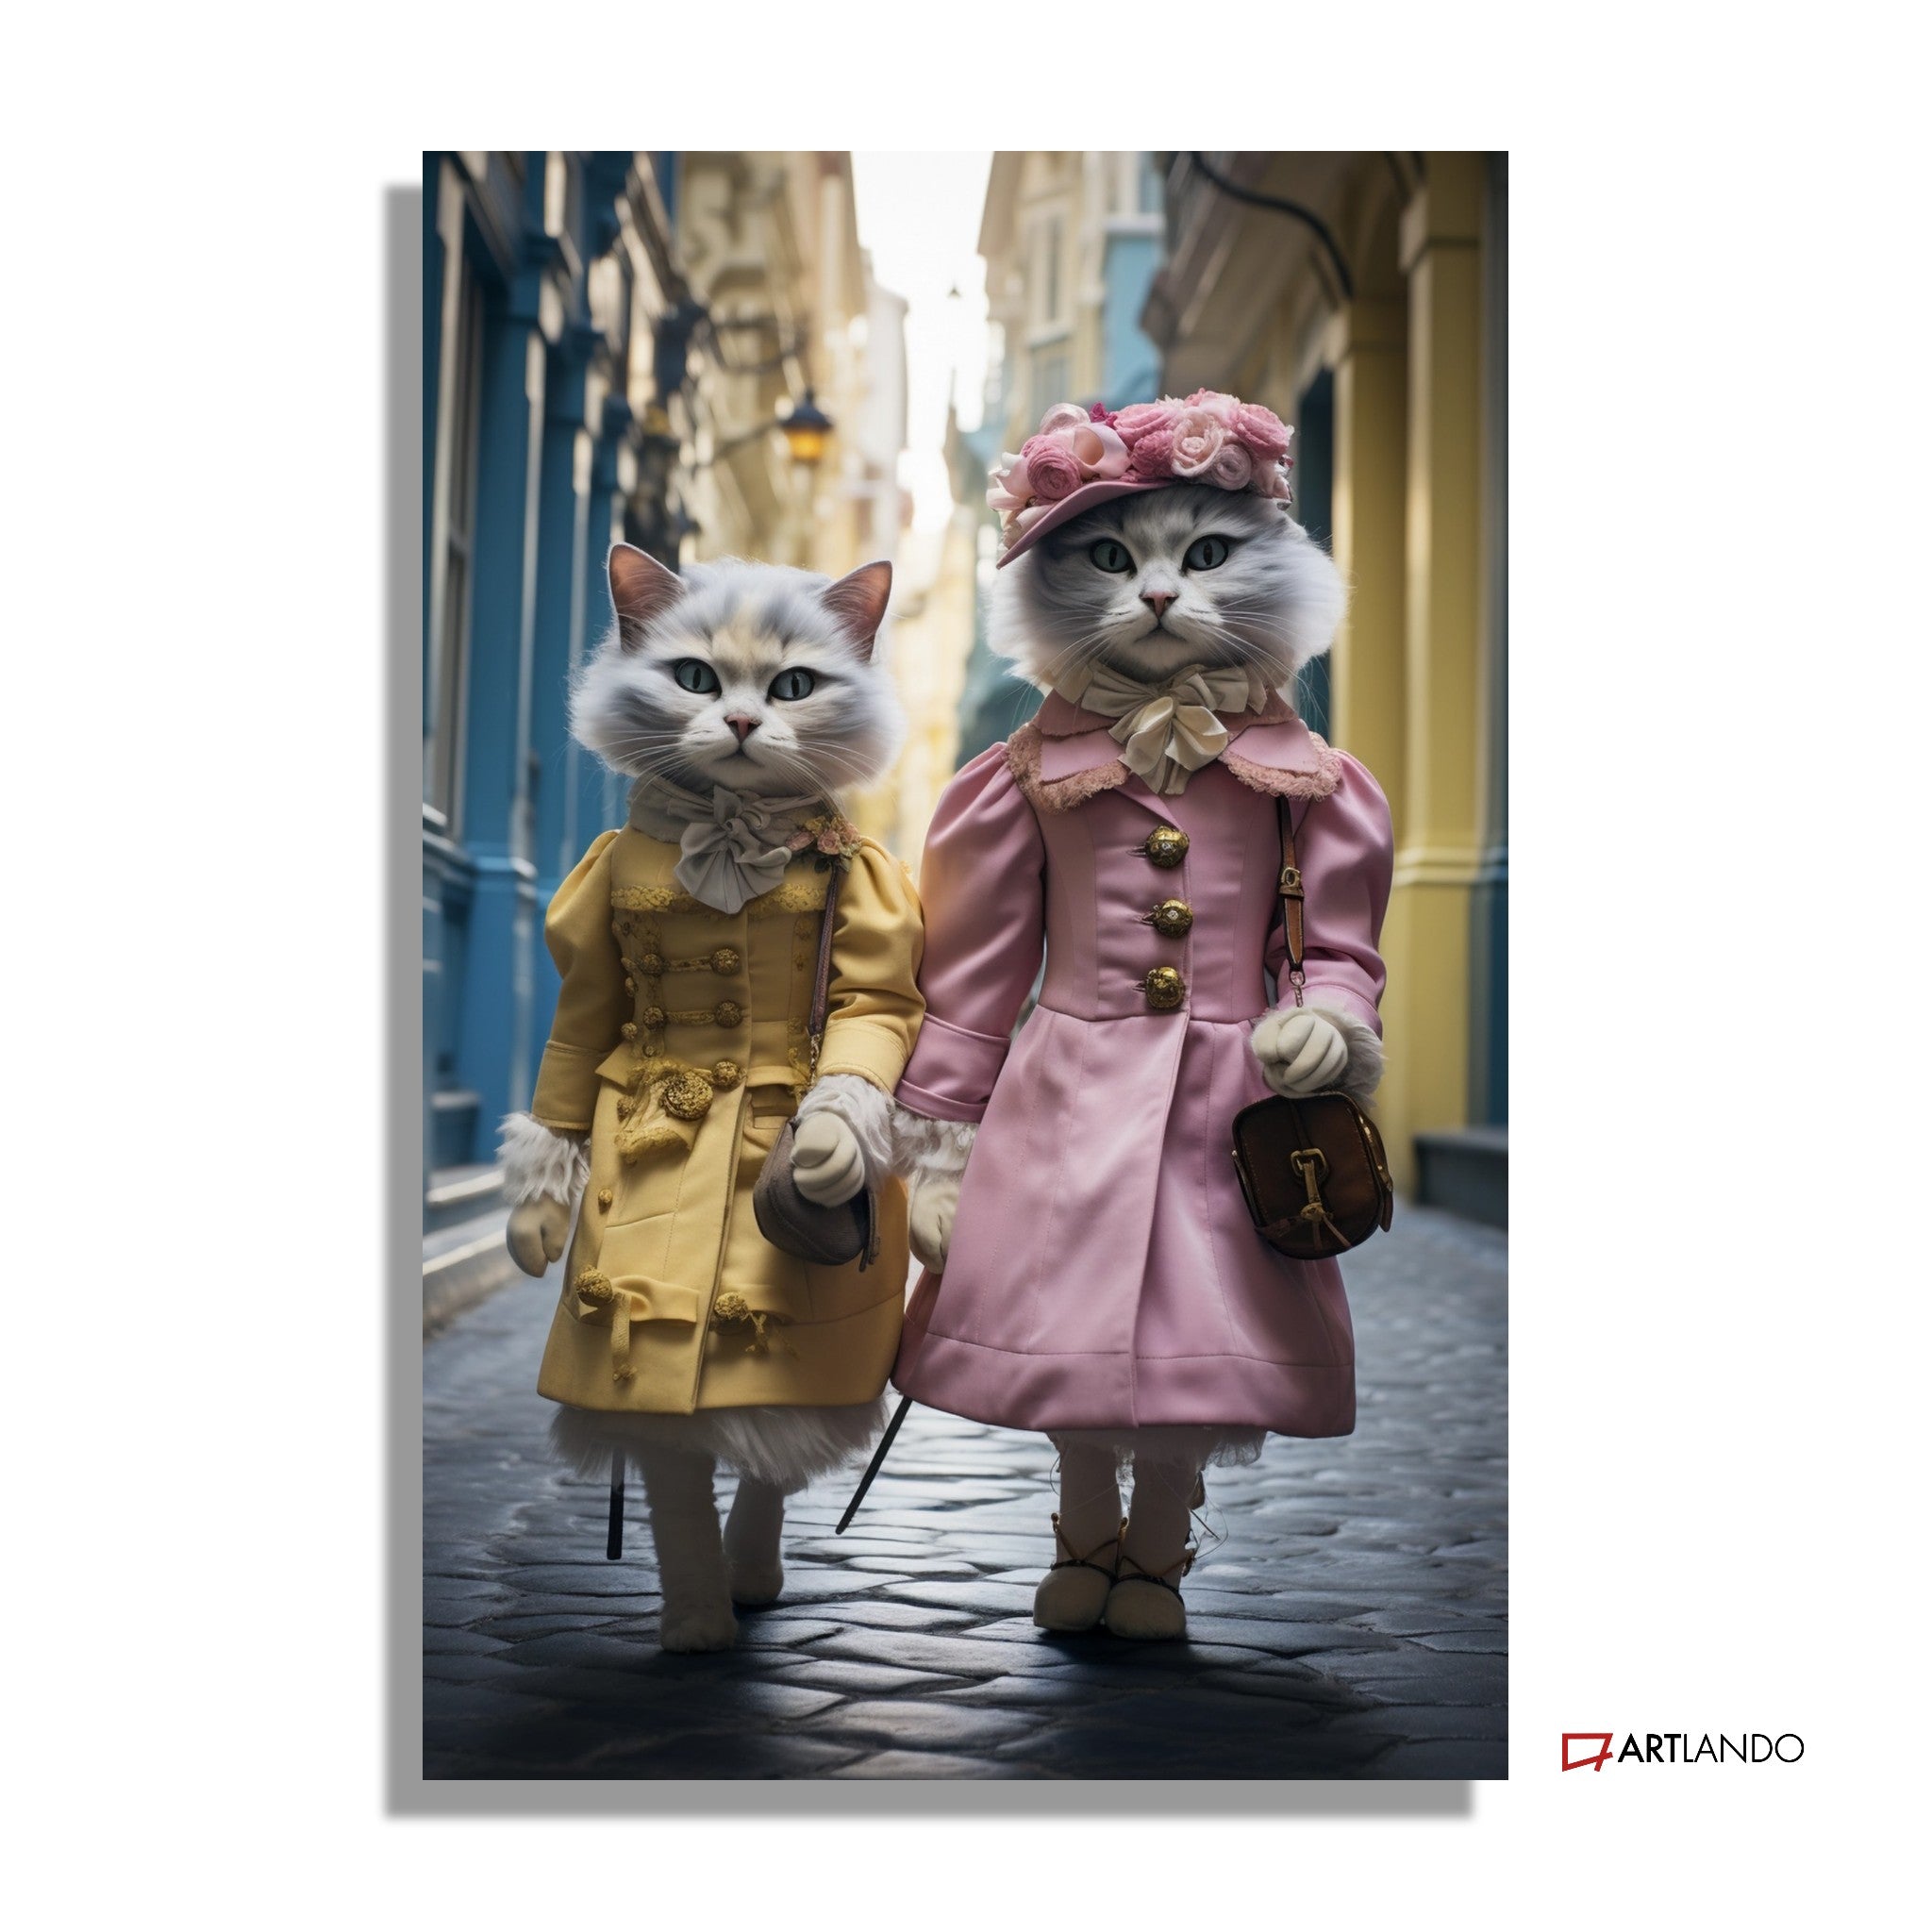 Katzendamen in historischer Kleidung spazieren durch Innenstadt